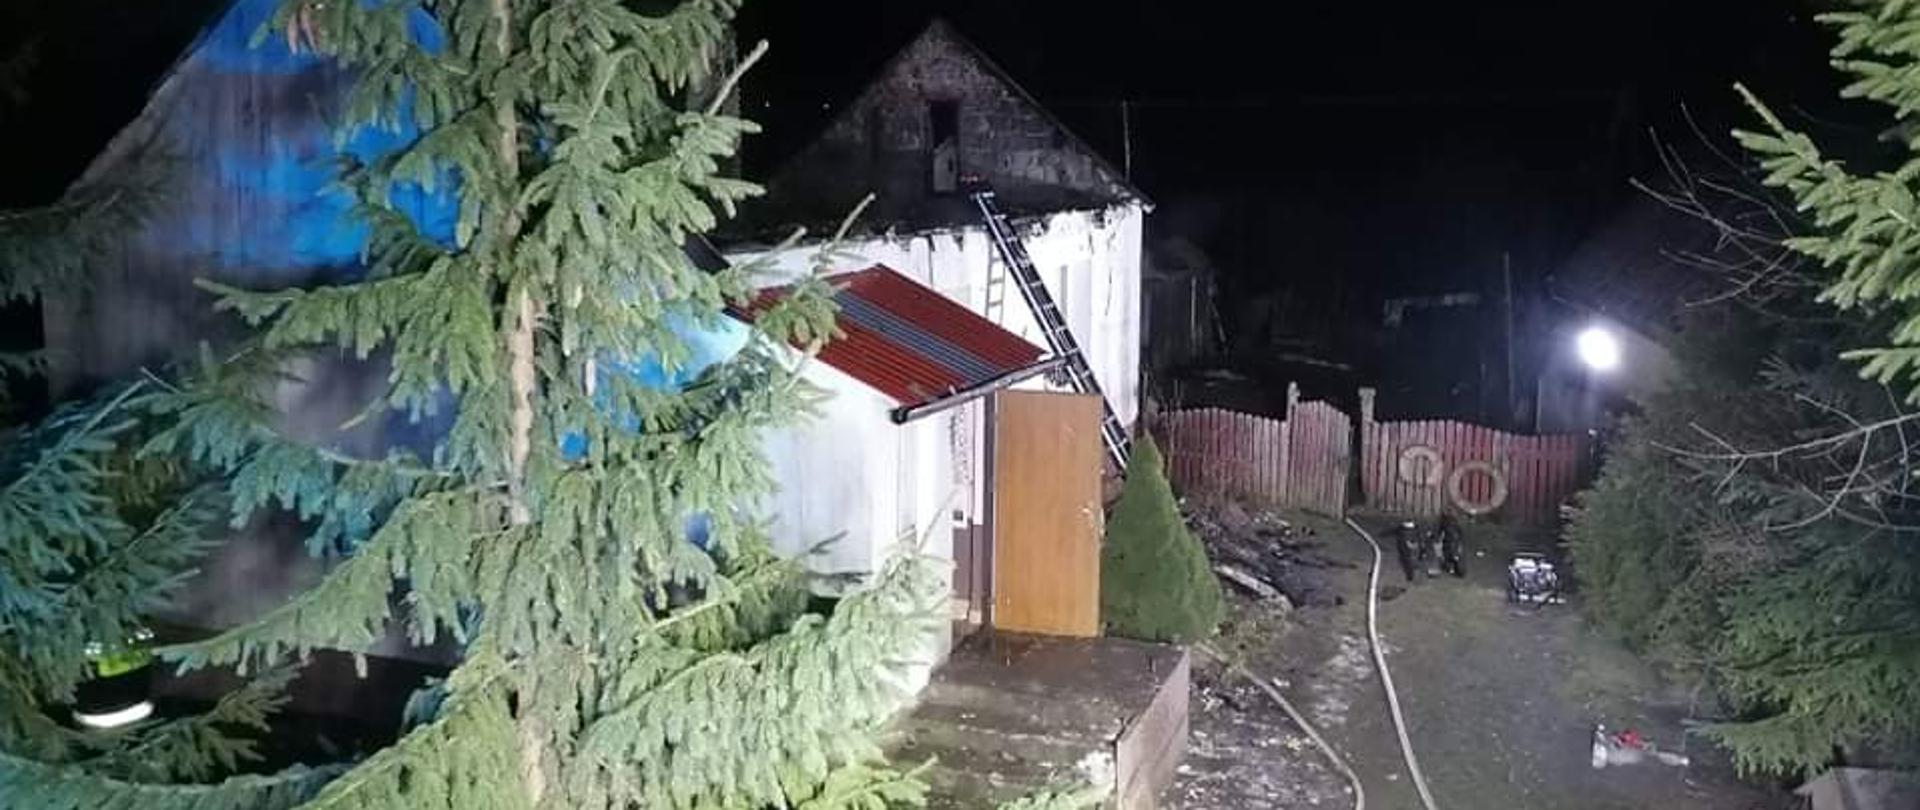 Zdjęcie przedstawia posesję gdzie w domu mieszkalnym wybuchł pożar. Widać linię gaśnicza rozwiniętą na ziemi, a z lewej strony zabudowania przysłonięte świerkiem.